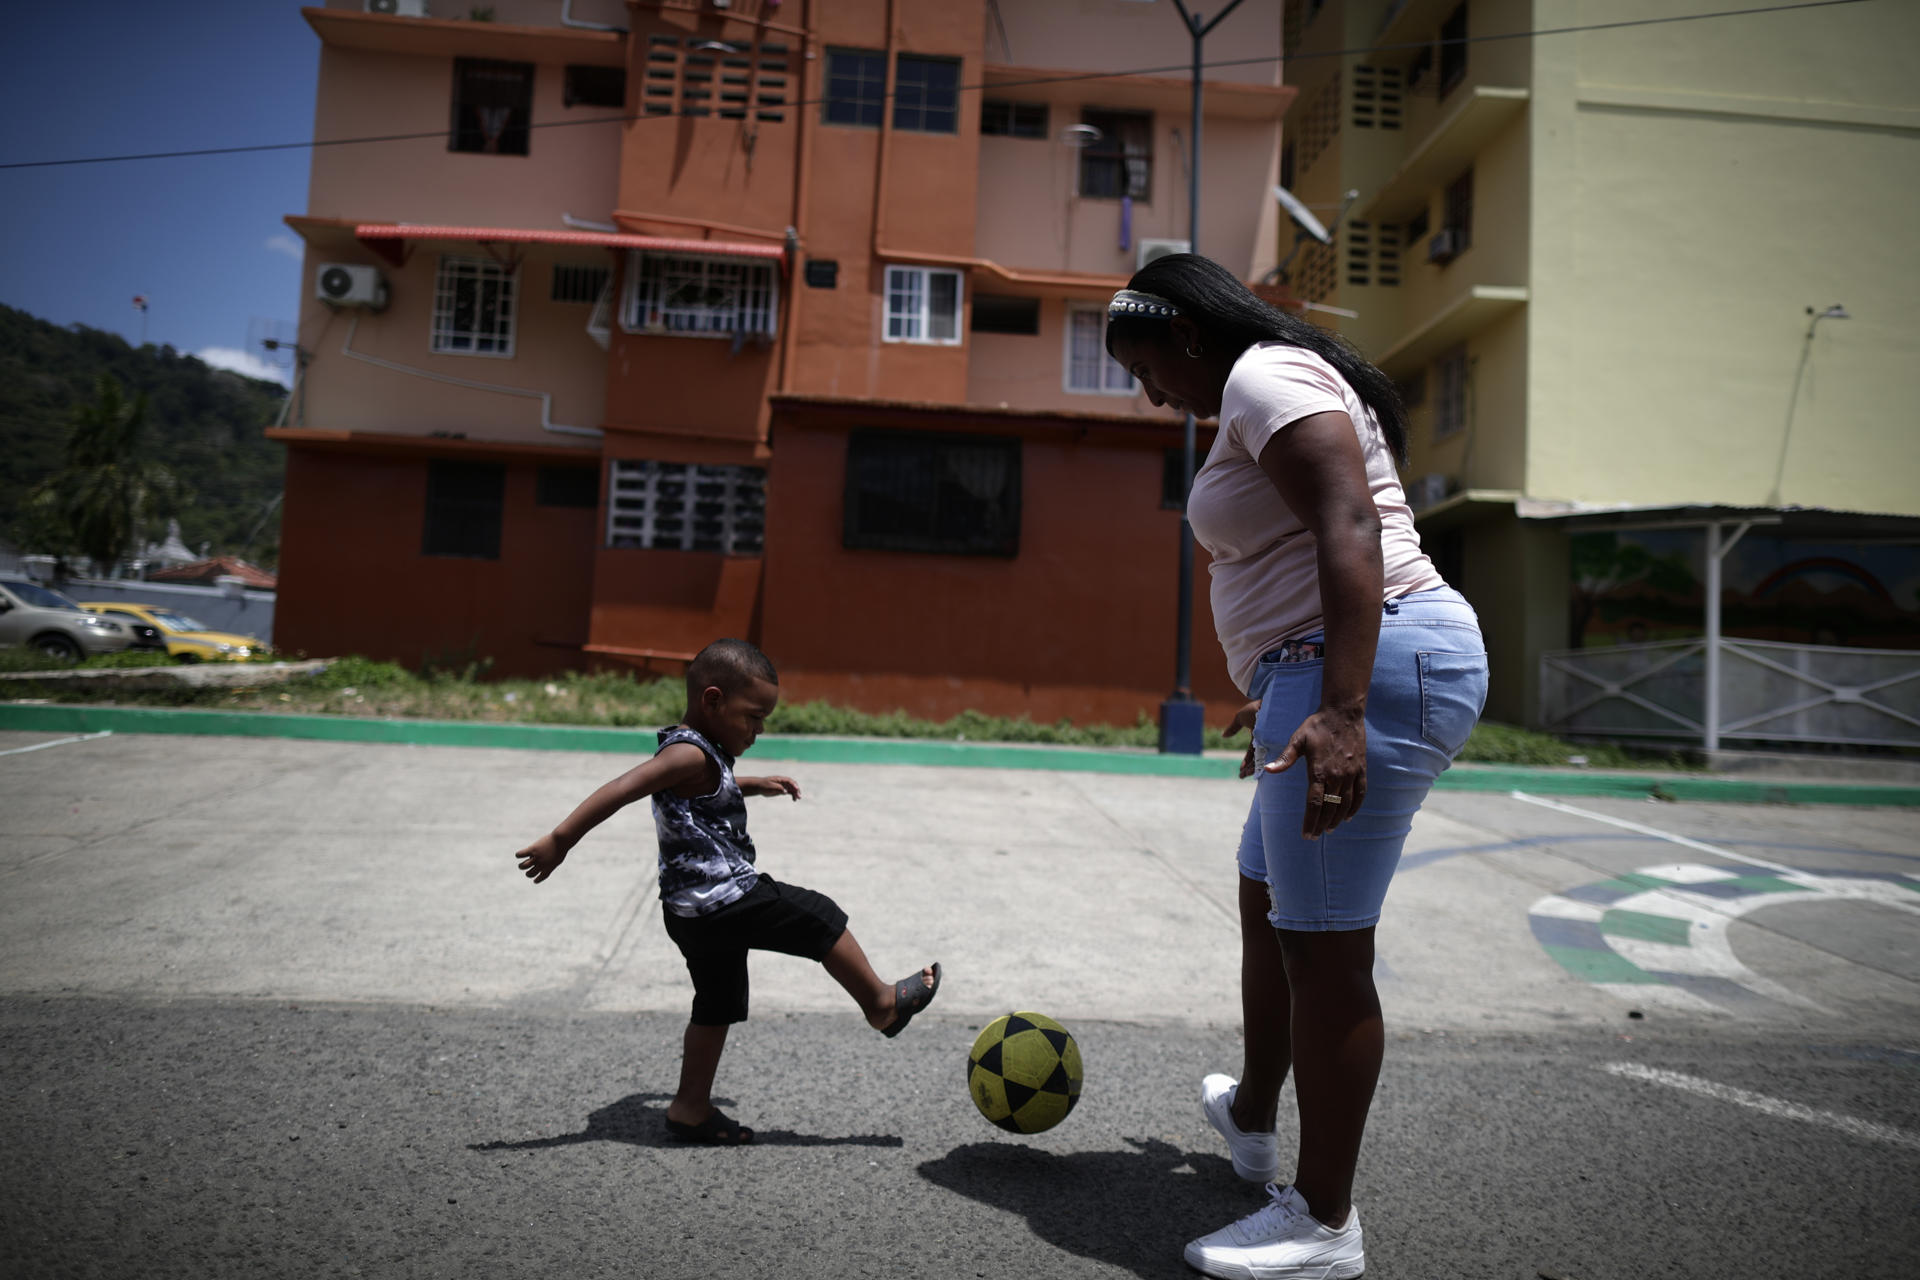 La entrenadora de la selección sub-20 femenina de Panamá Raiza Gutiérrez posa mientras juega con un balón durante una entrevista con EFE, el 22 de marzo de 2023, en el barrio de El Chorrillo en Ciudad de Panamá (Panamá). EFE/Bienvenido Velasco